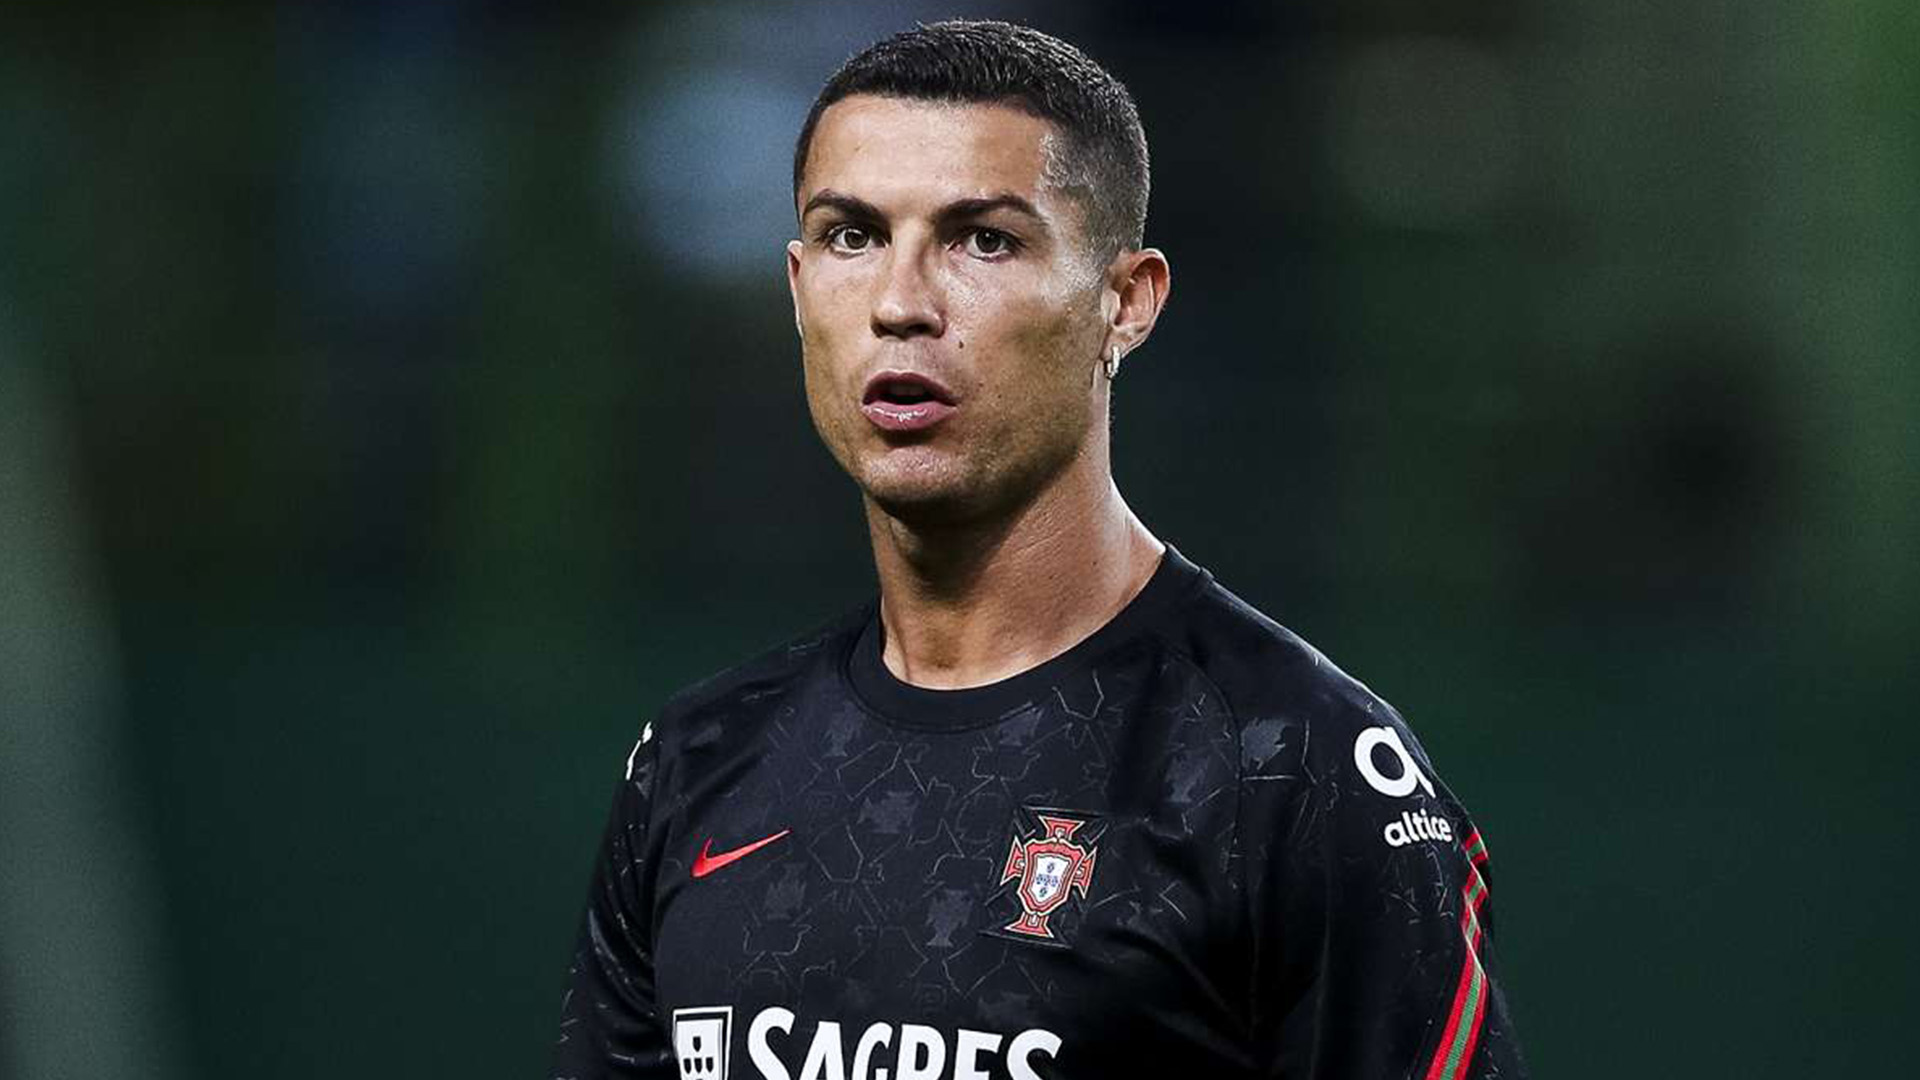 Cristiano Ronaldo tested corona positive